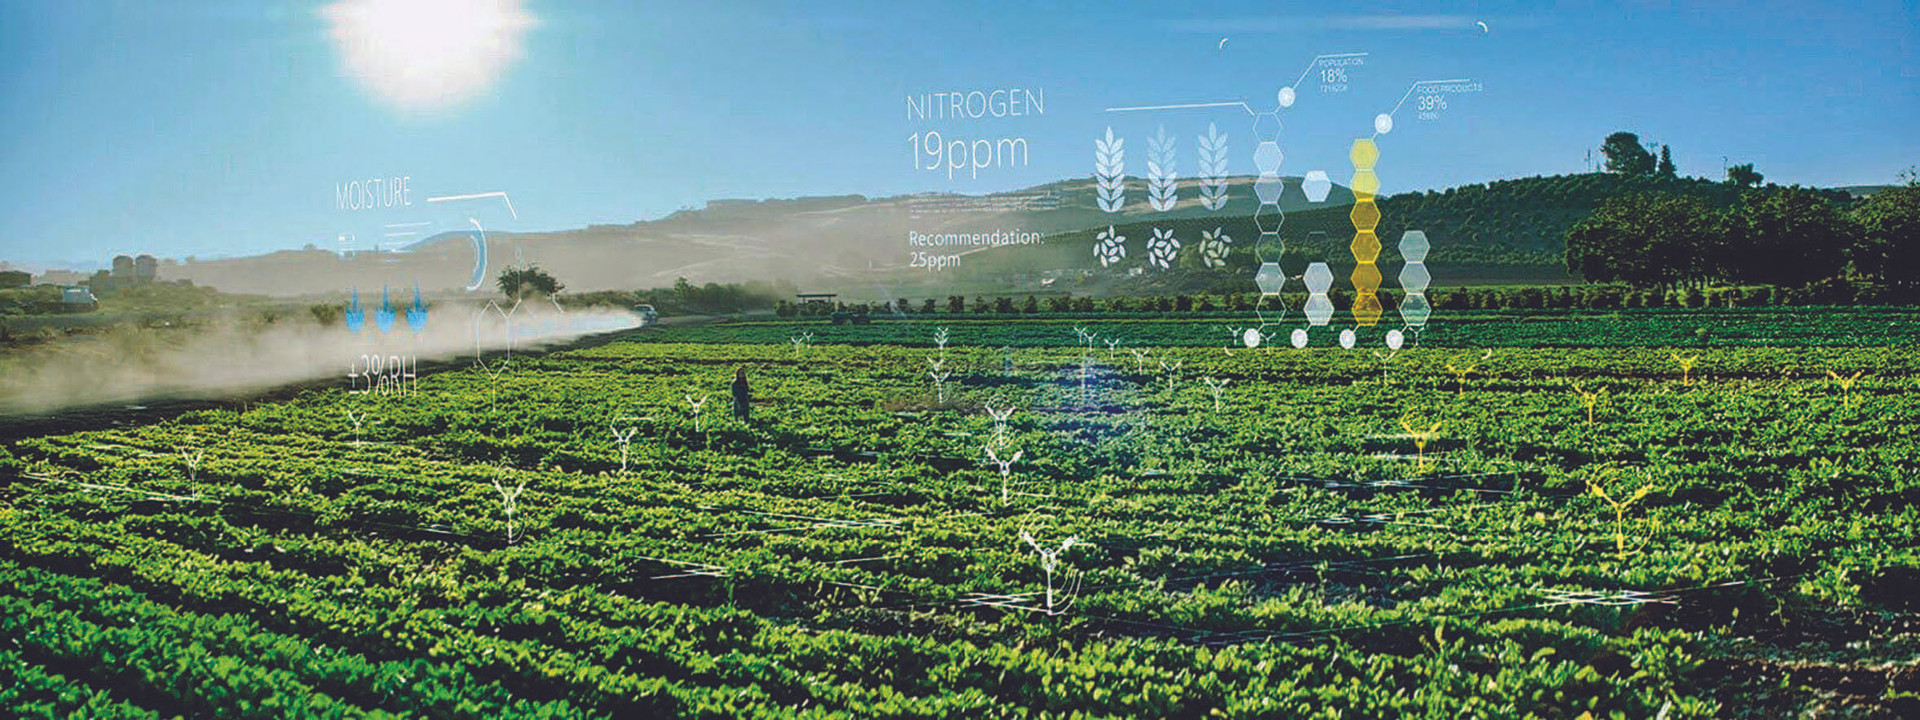 Những đột phá mới của công nghệ nông nghiệp chính xác - Ảnh 1.